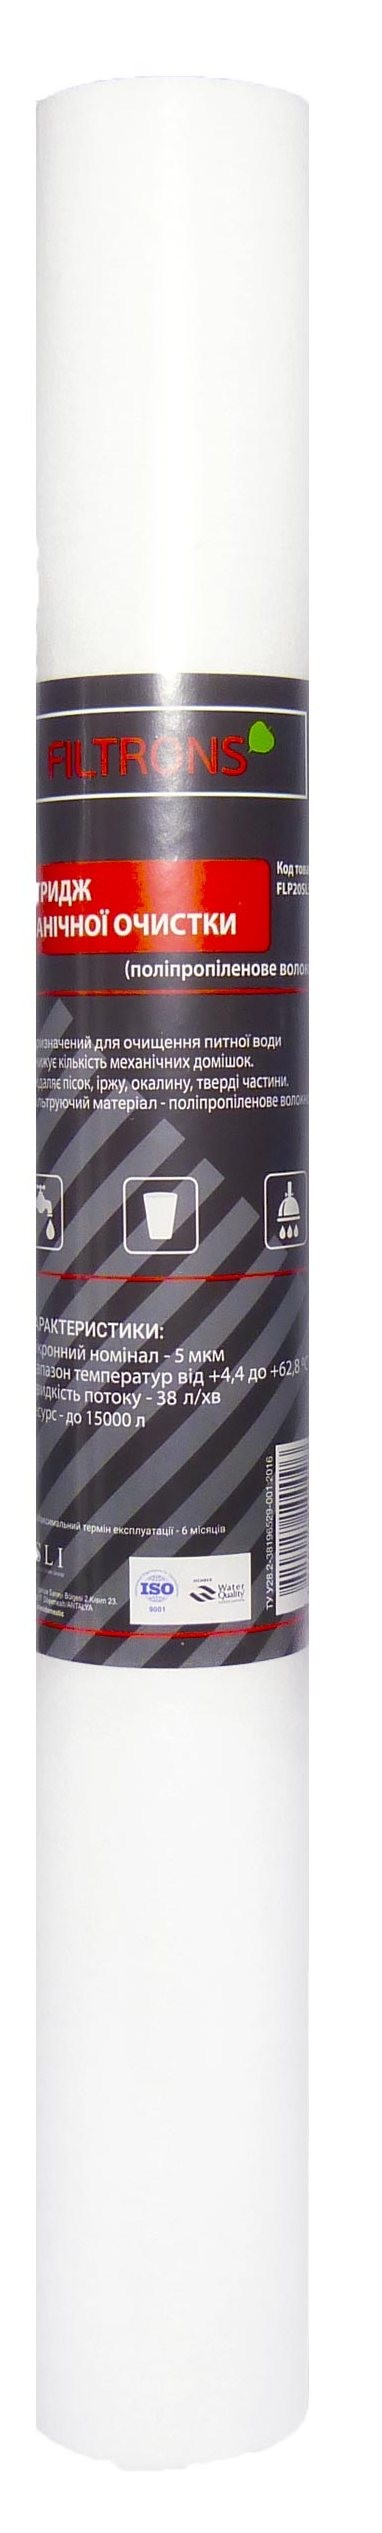 Картридж для фильтра Filtrons 20' SLIM 20 мкм (FLVR20SL20) в Ужгороде